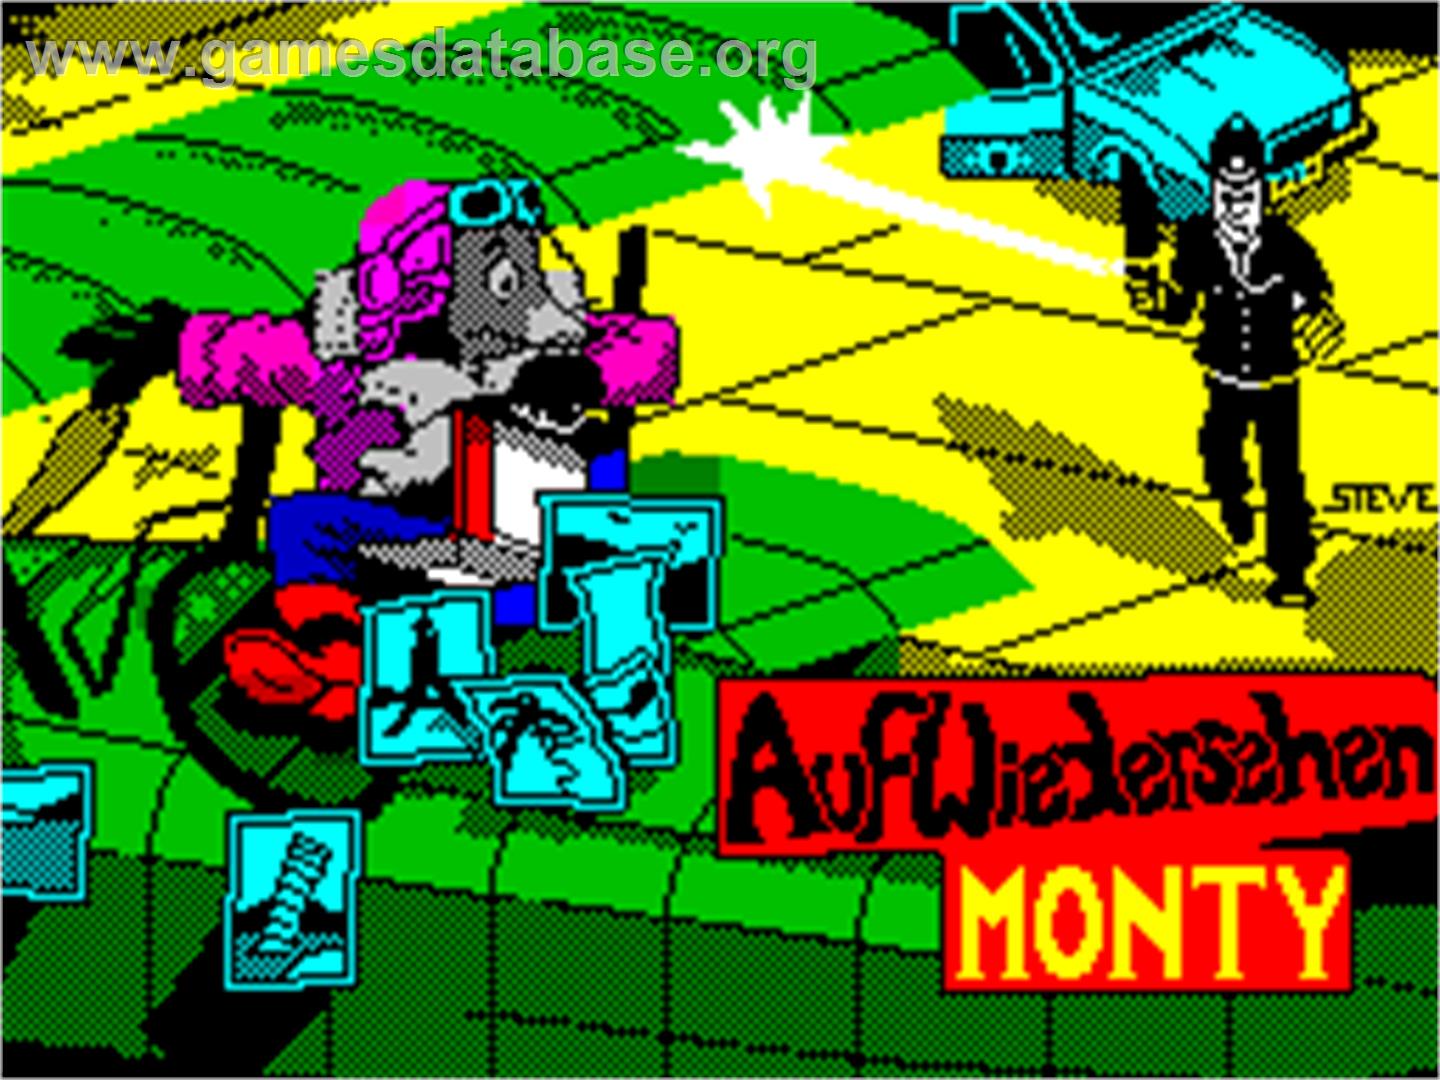 Auf Wiedersehen Monty - Sinclair ZX Spectrum - Artwork - Title Screen